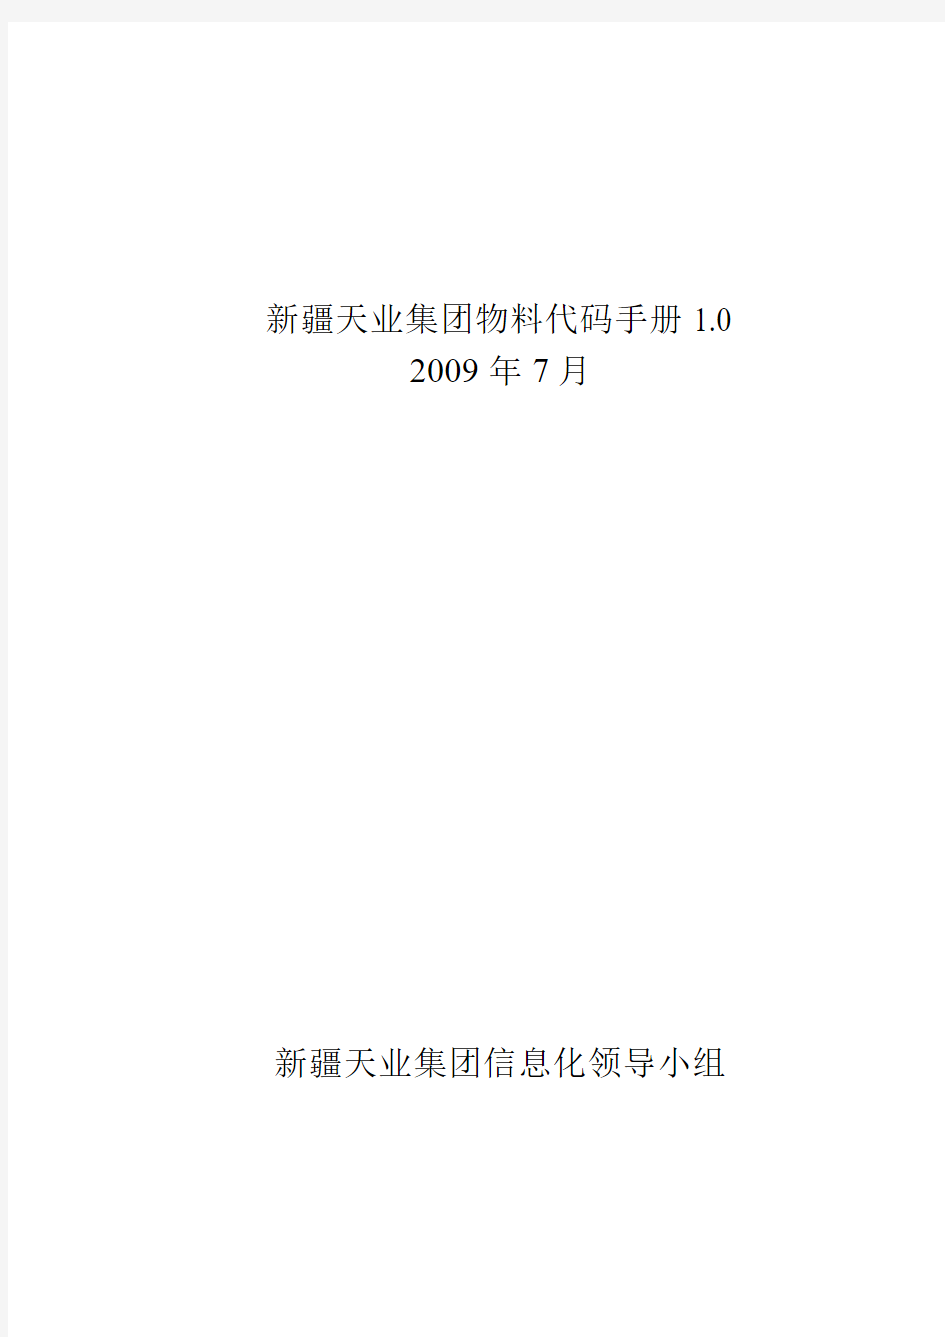 物料代码手册2009[1][1][1][1].7.8